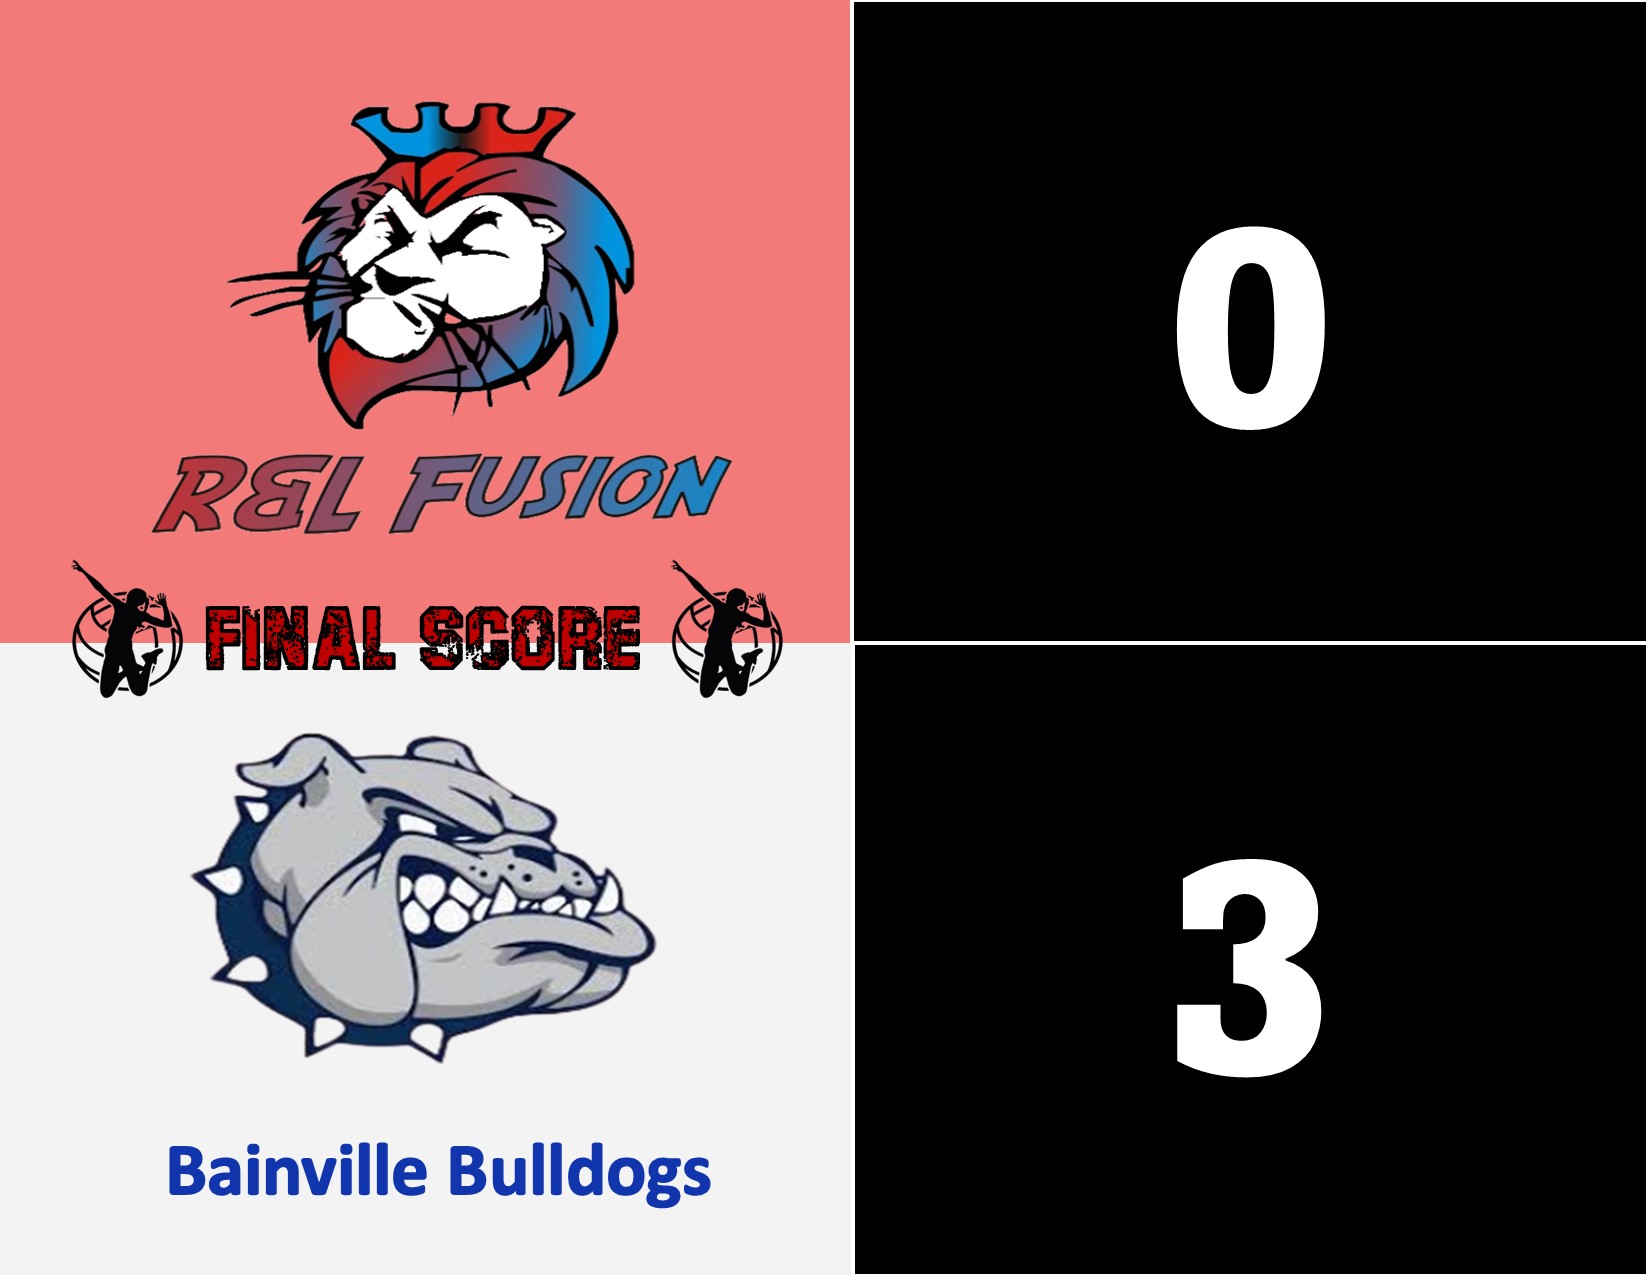 R&L Fusion (0) VS Bainville Bulldogs (3)